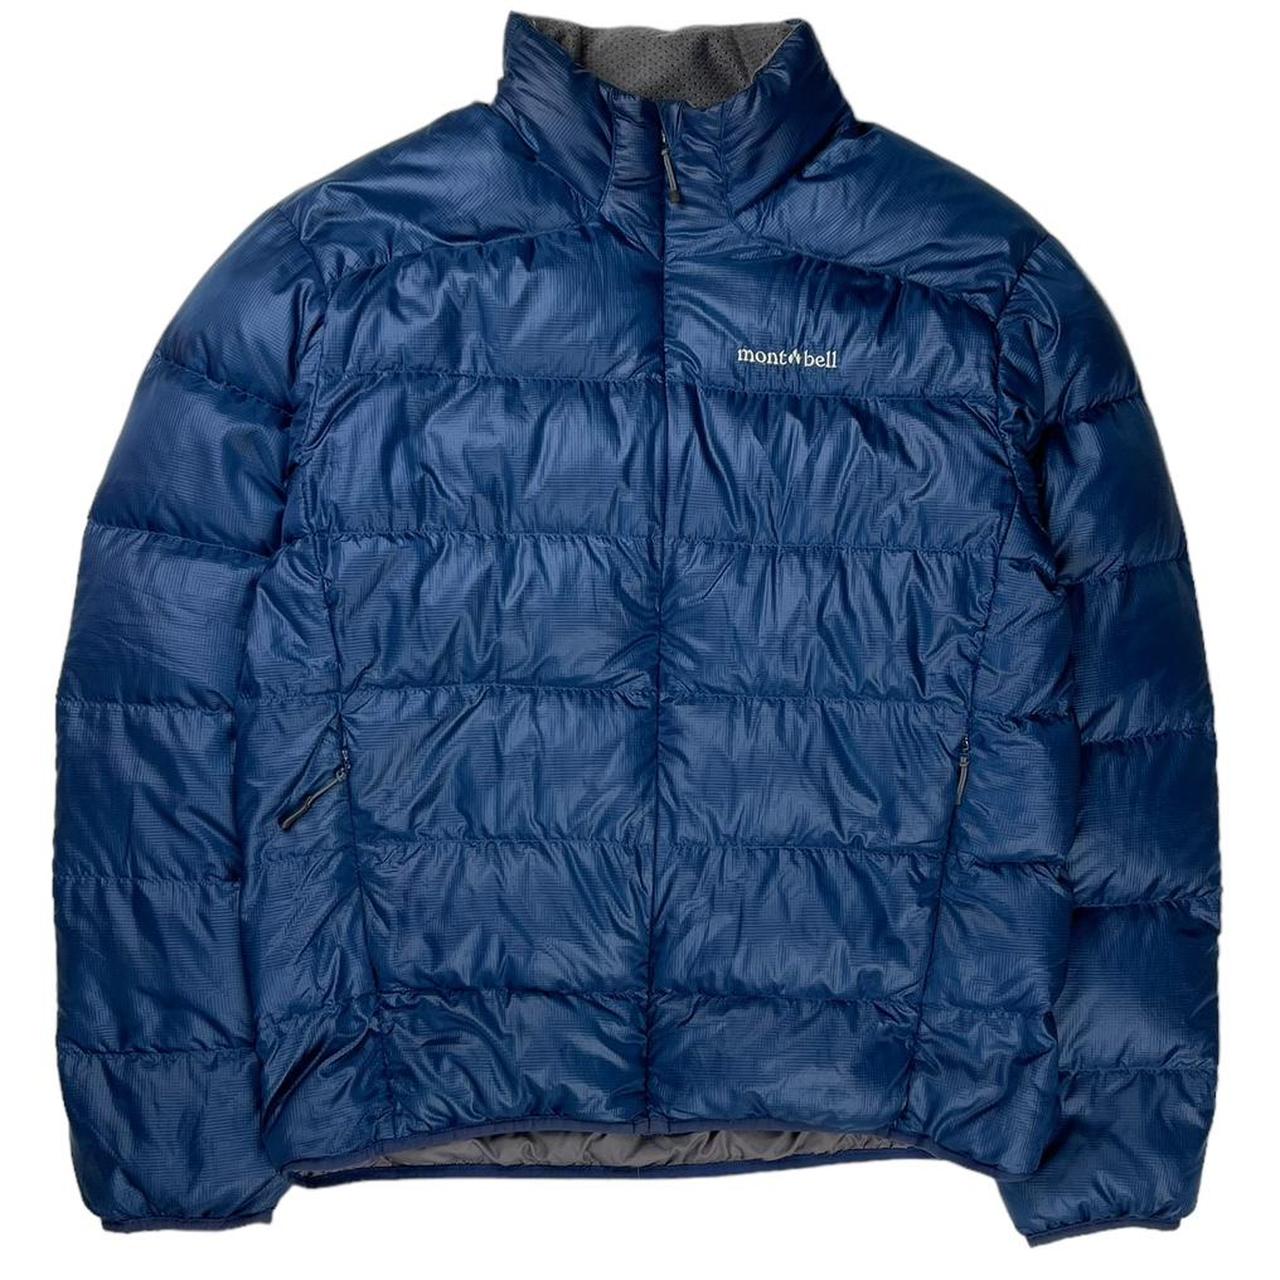 Montbell blue down puffer jacket Size: Medium... - Depop